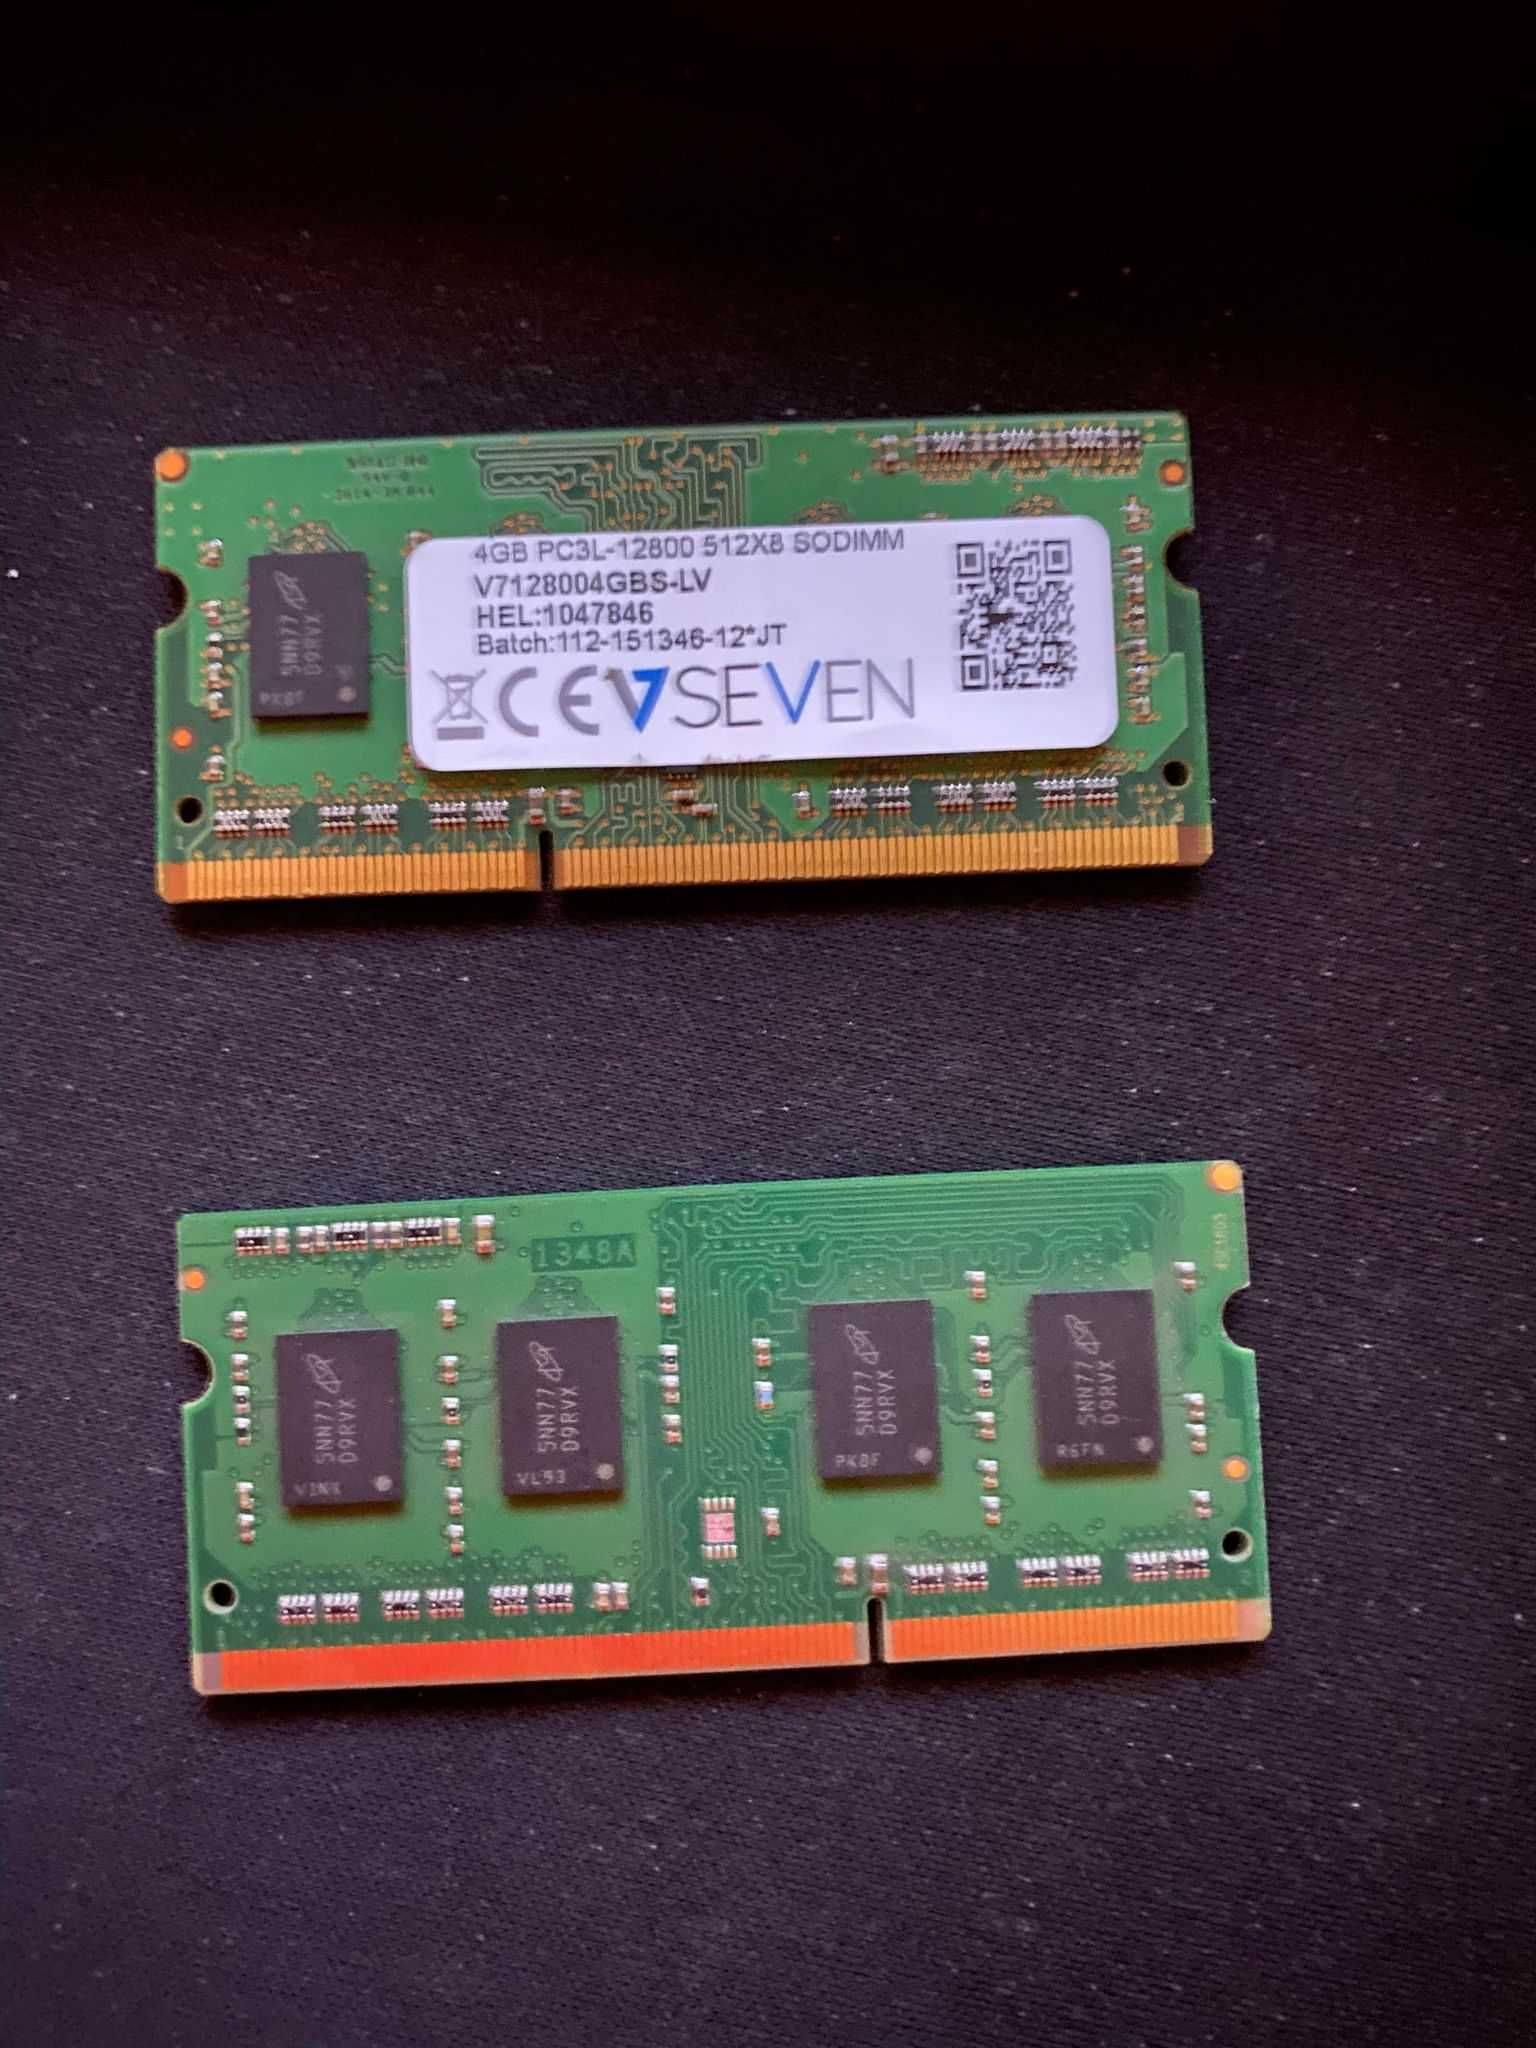 Placute RAM 4GB sodimm udimm DDR3L DDR3 DDR4